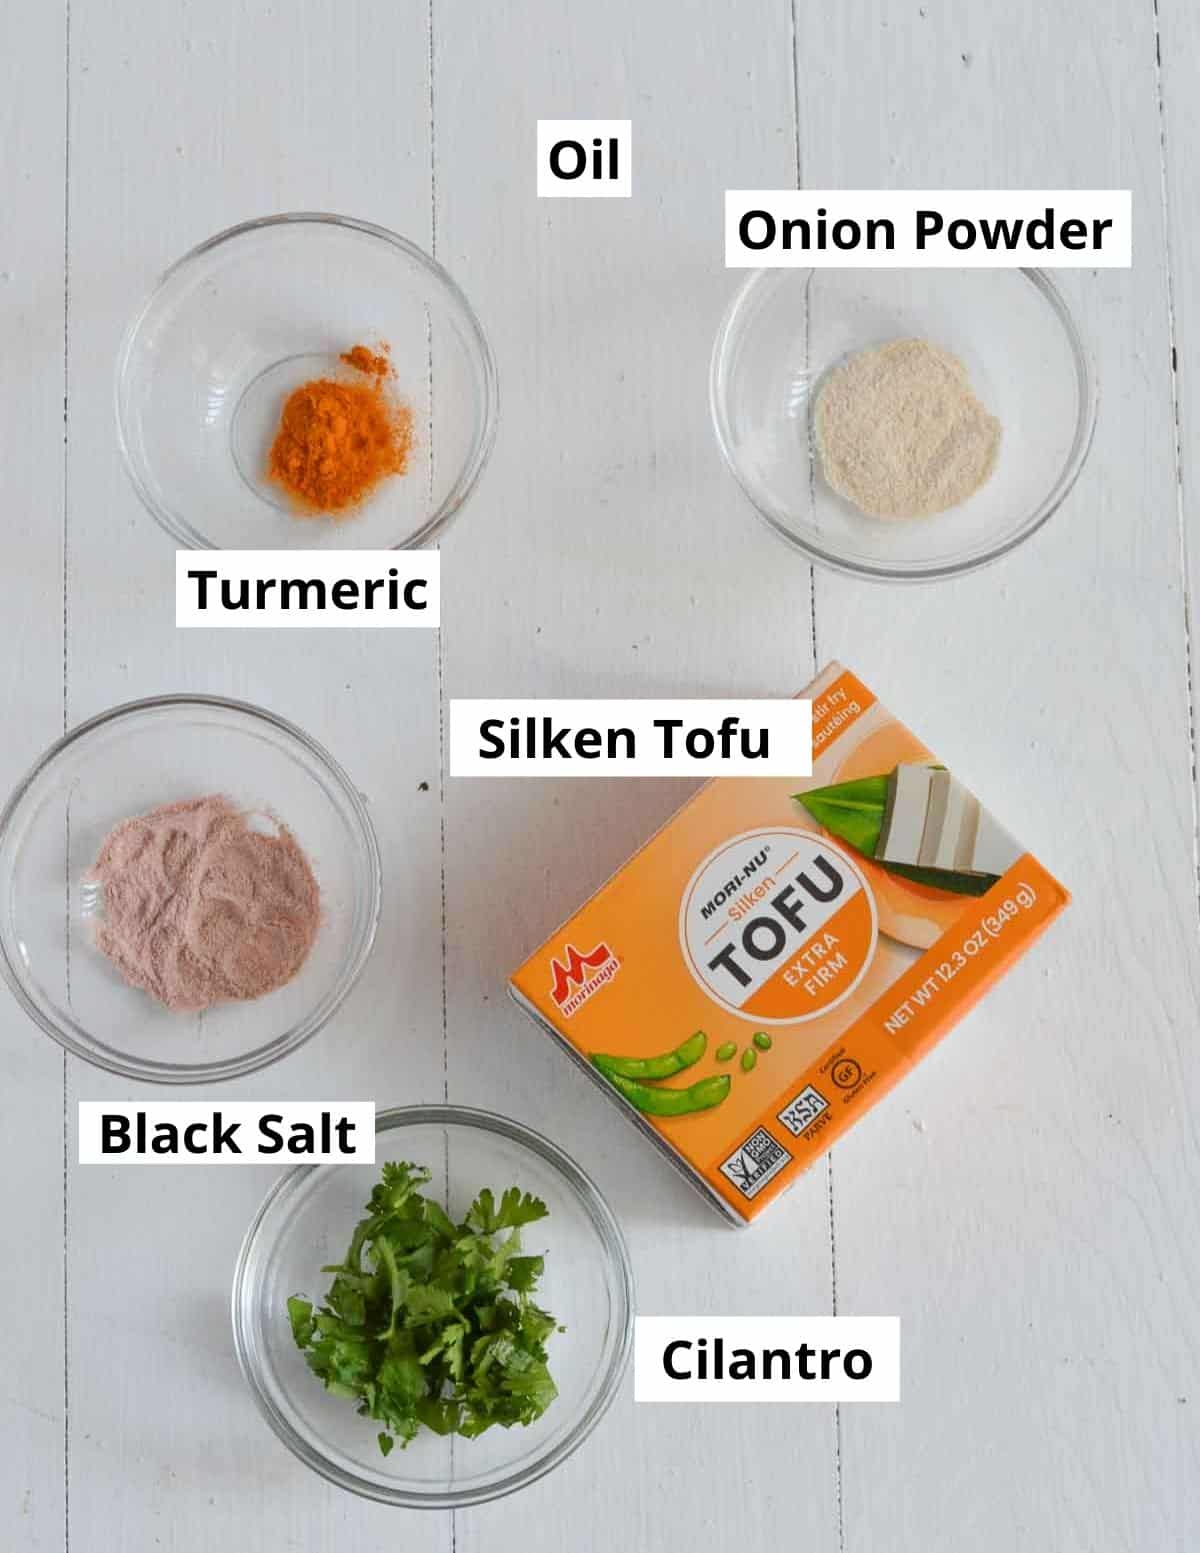 ingredients shown to make scramble.